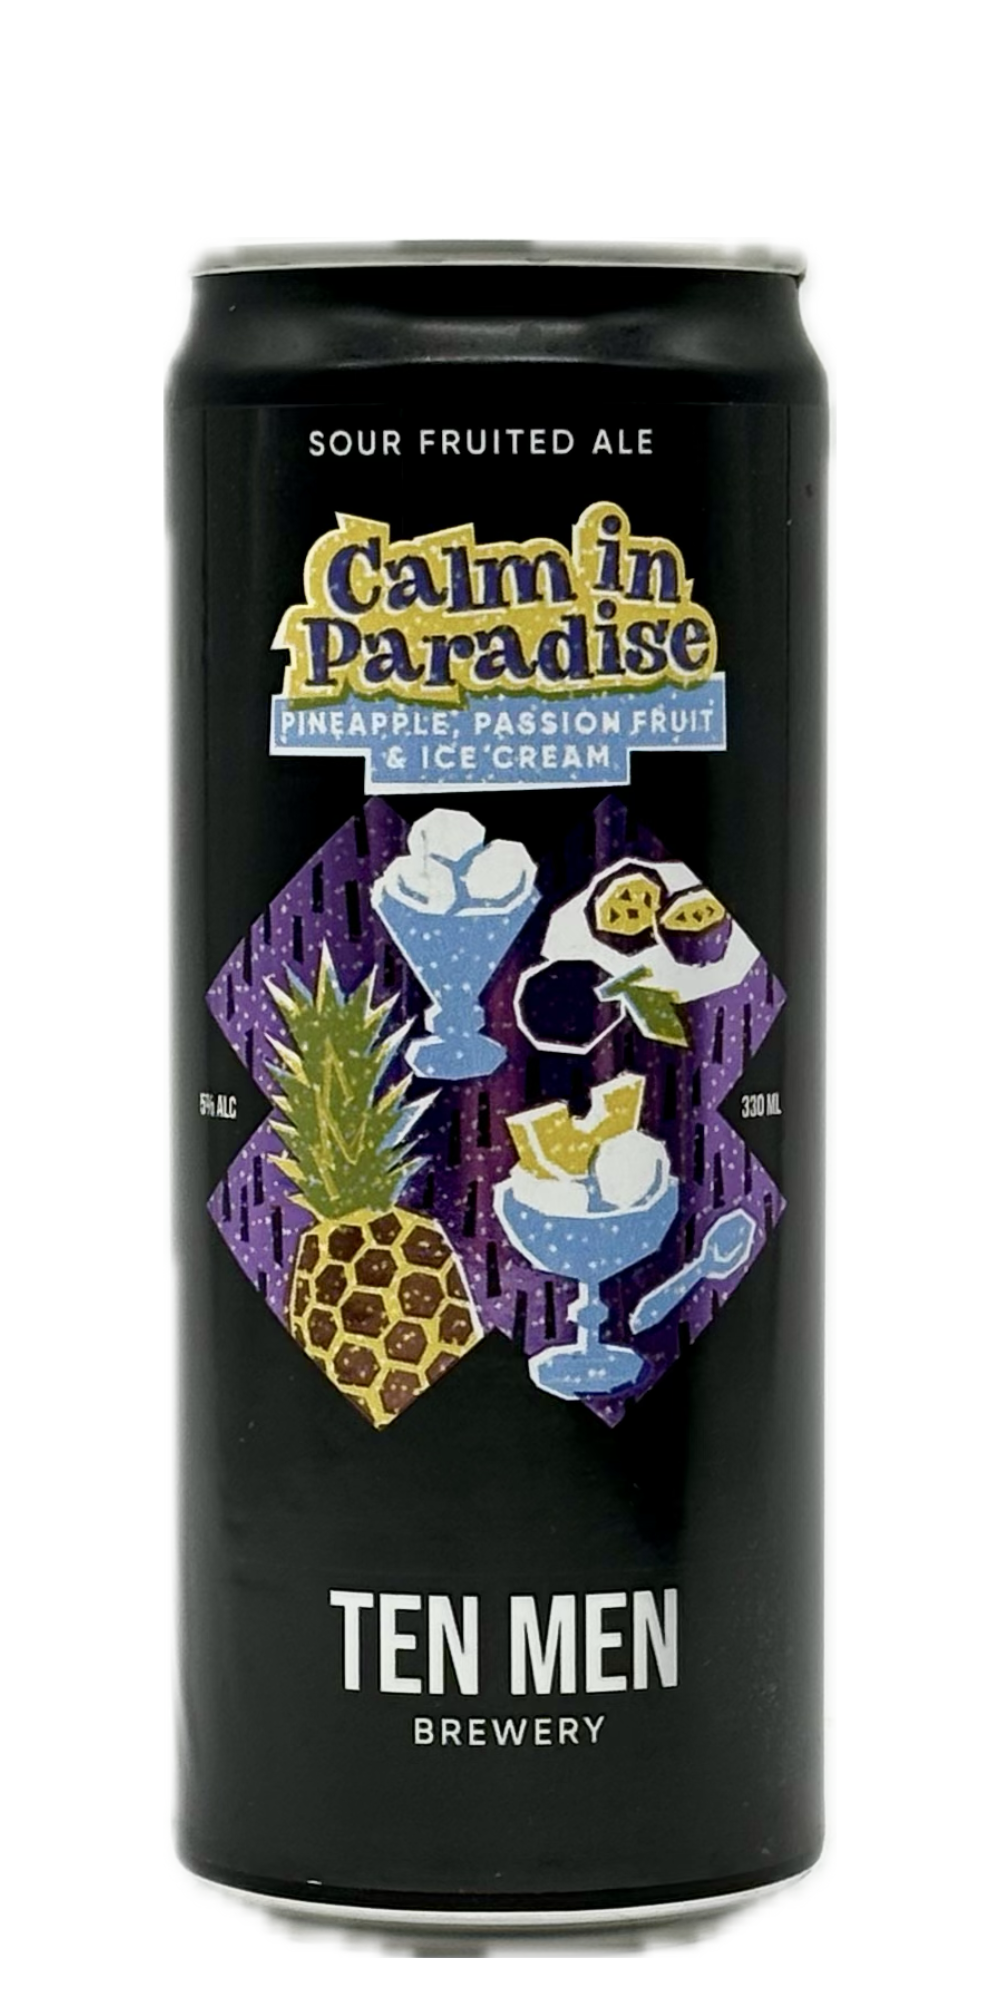 Ten Men - Calm in Paradise: Pineapple, Passionfruit & Ice Cream